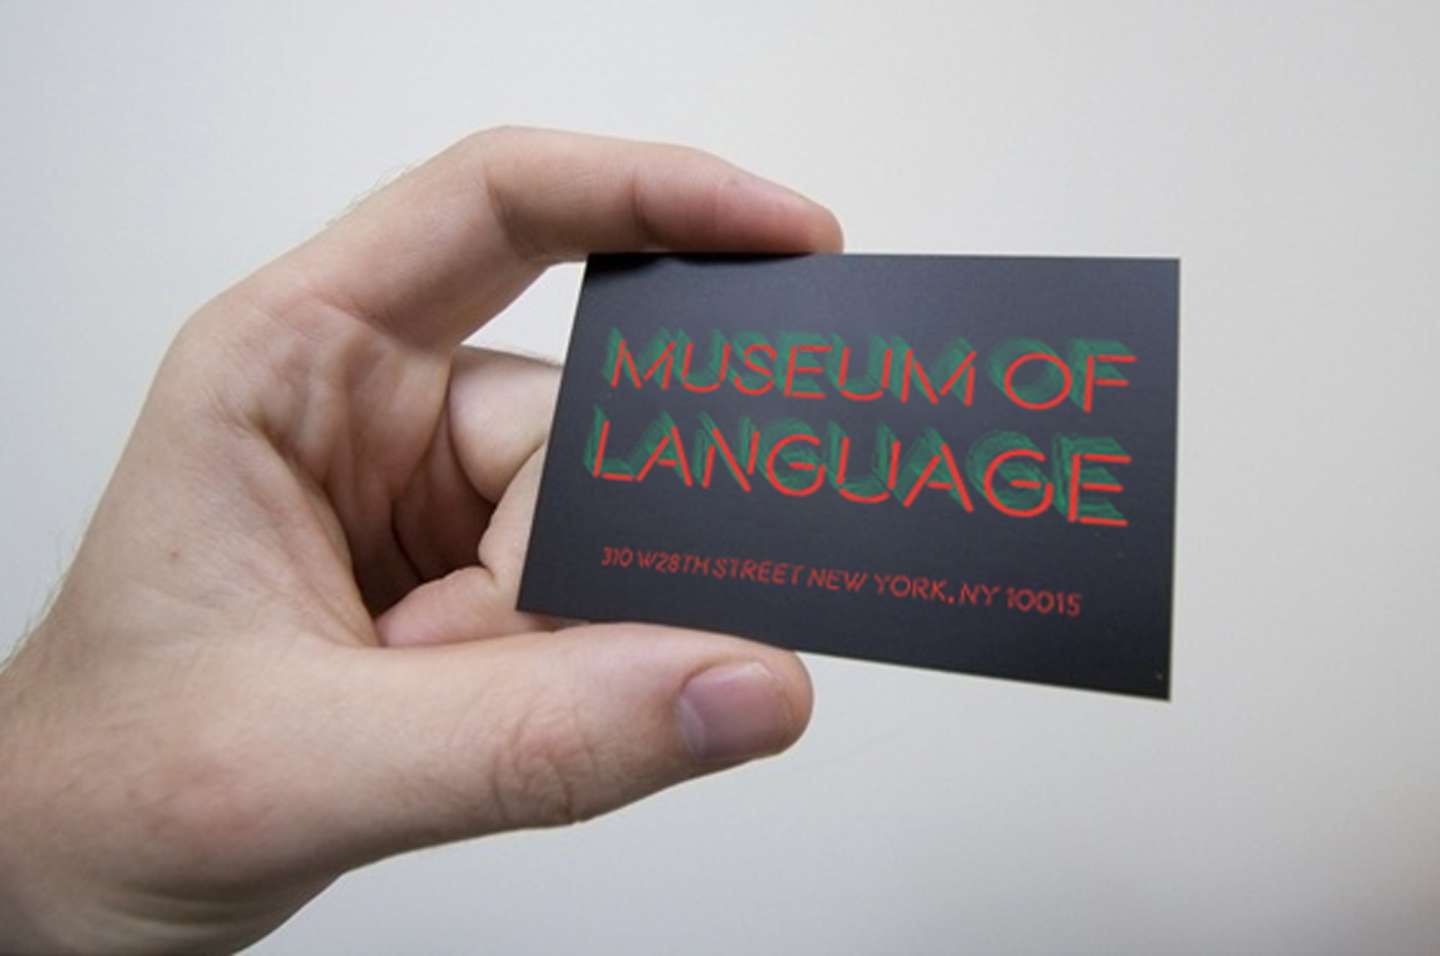 Museum of Language